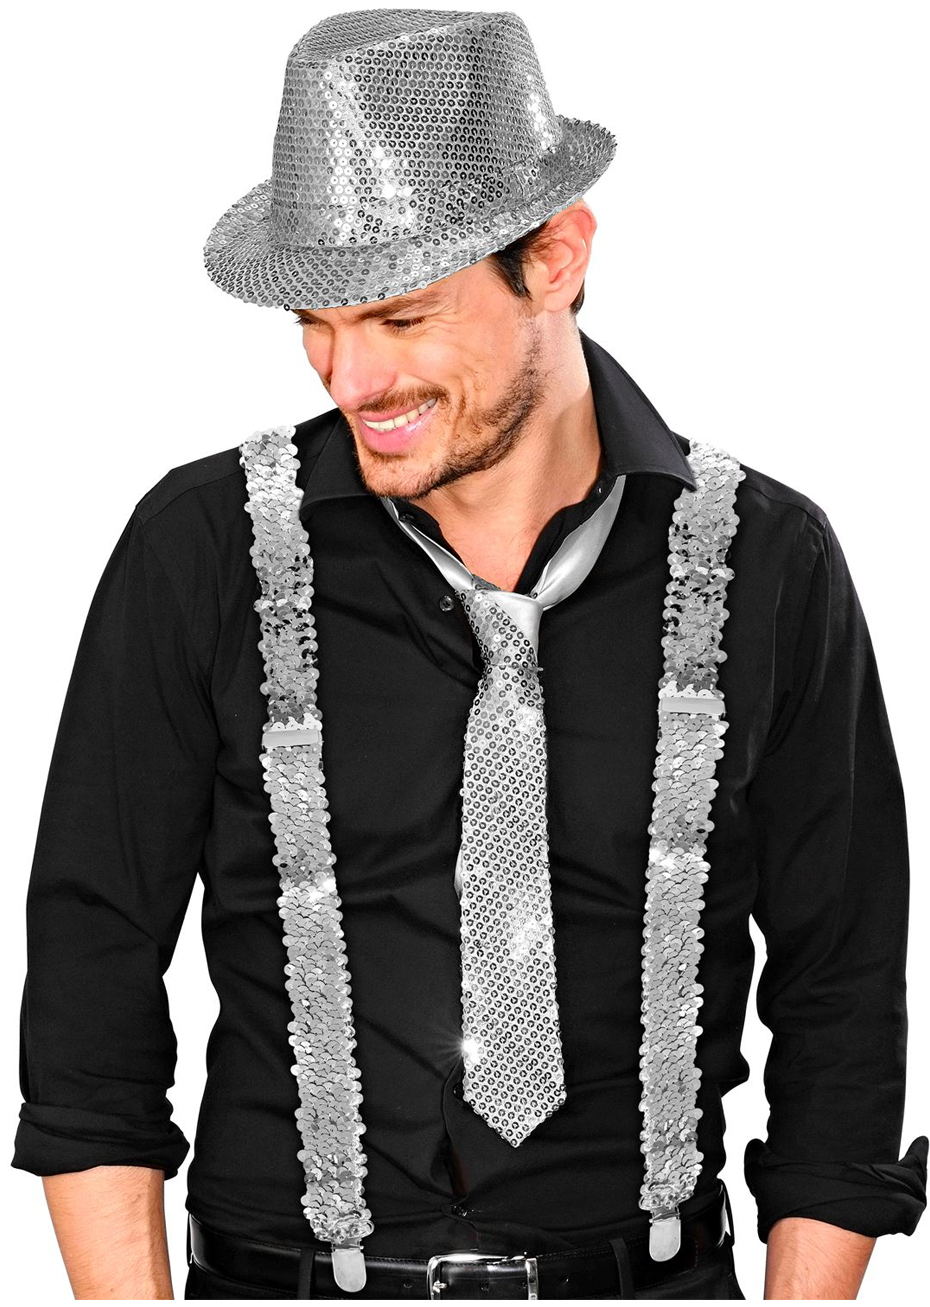 Chemise à paillettes pour homme - Gilet à paillettes - Gilet à paillettes -  Pour homme et femme - Accessoire de costume disco - Carnaval et fête à